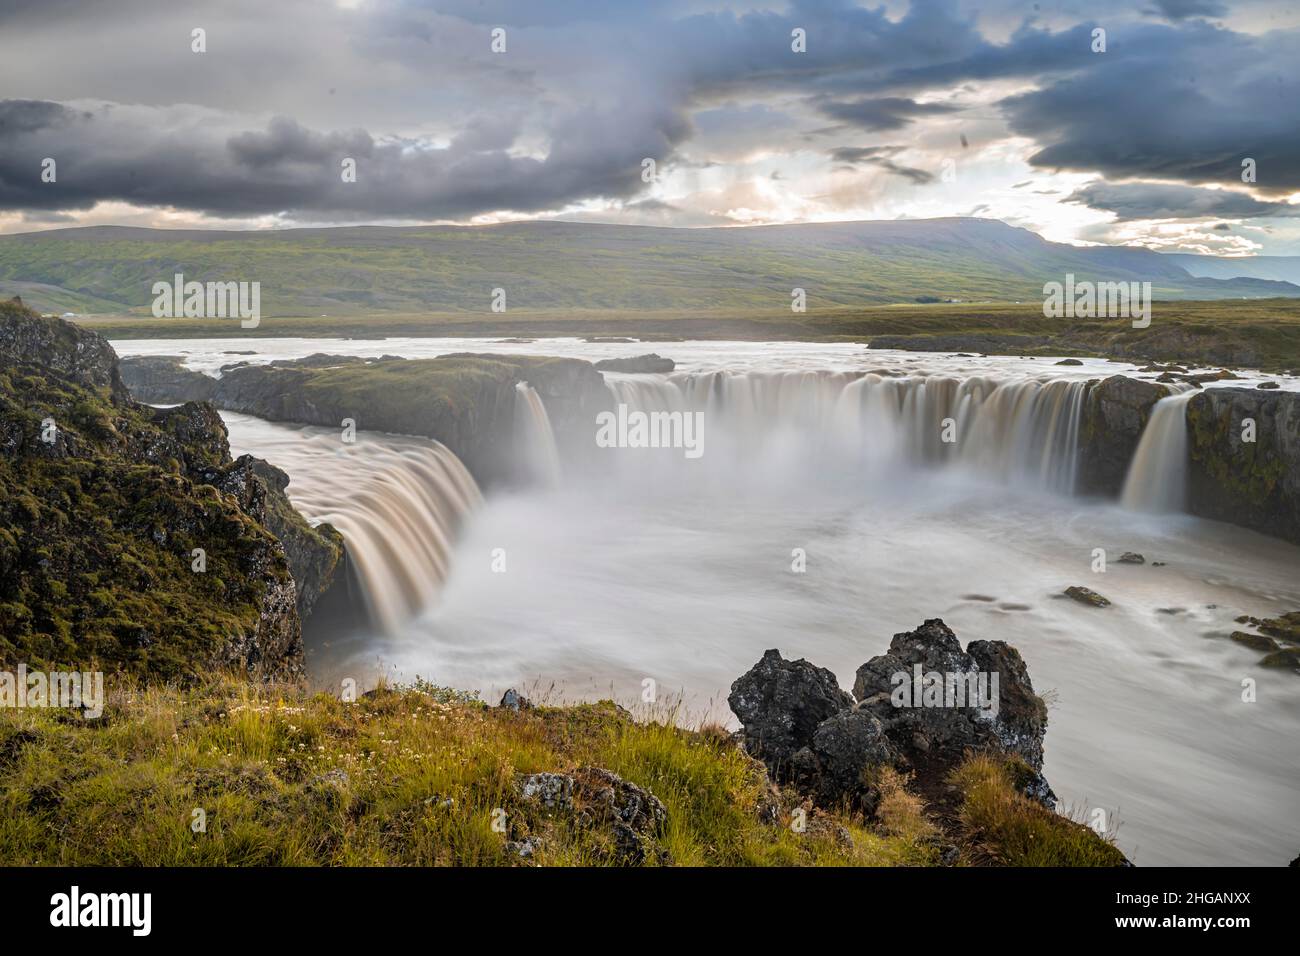 Chute d'eau Gooafoss en été, rivière Skjalfandafljot, Norourland vestra, nord de l'Islande, Islande Banque D'Images